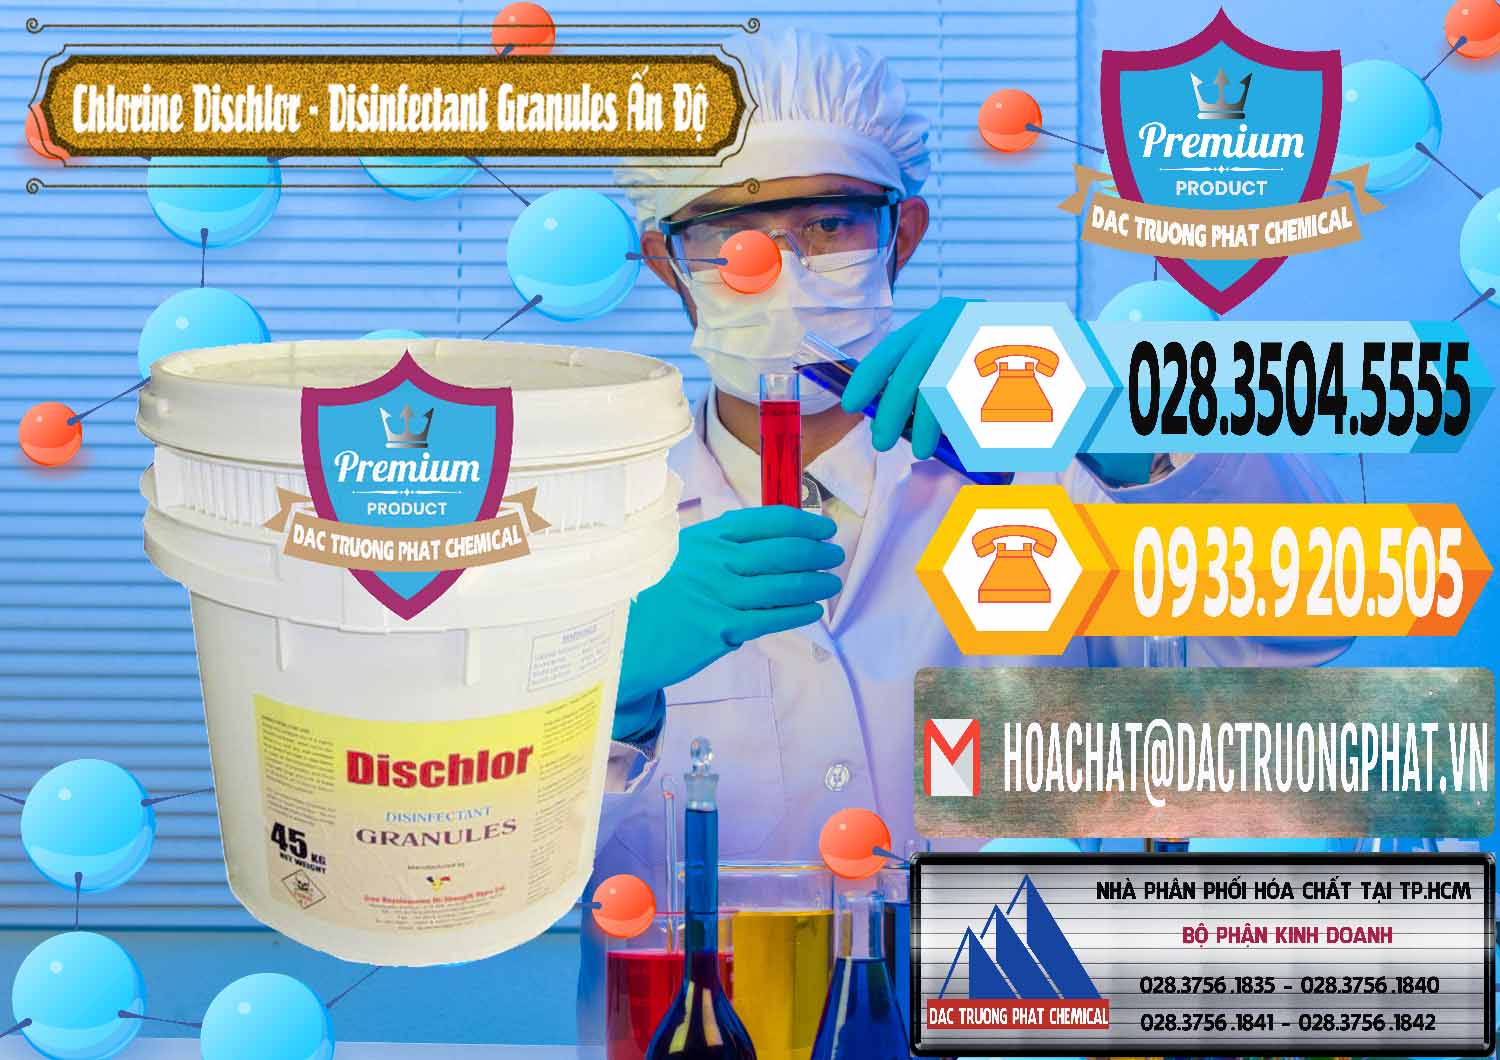 Đơn vị chuyên cung ứng - bán Chlorine – Clorin 70% Dischlor - Disinfectant Granules Ấn Độ India - 0248 - Đơn vị phân phối & bán hóa chất tại TP.HCM - hoachattayrua.net